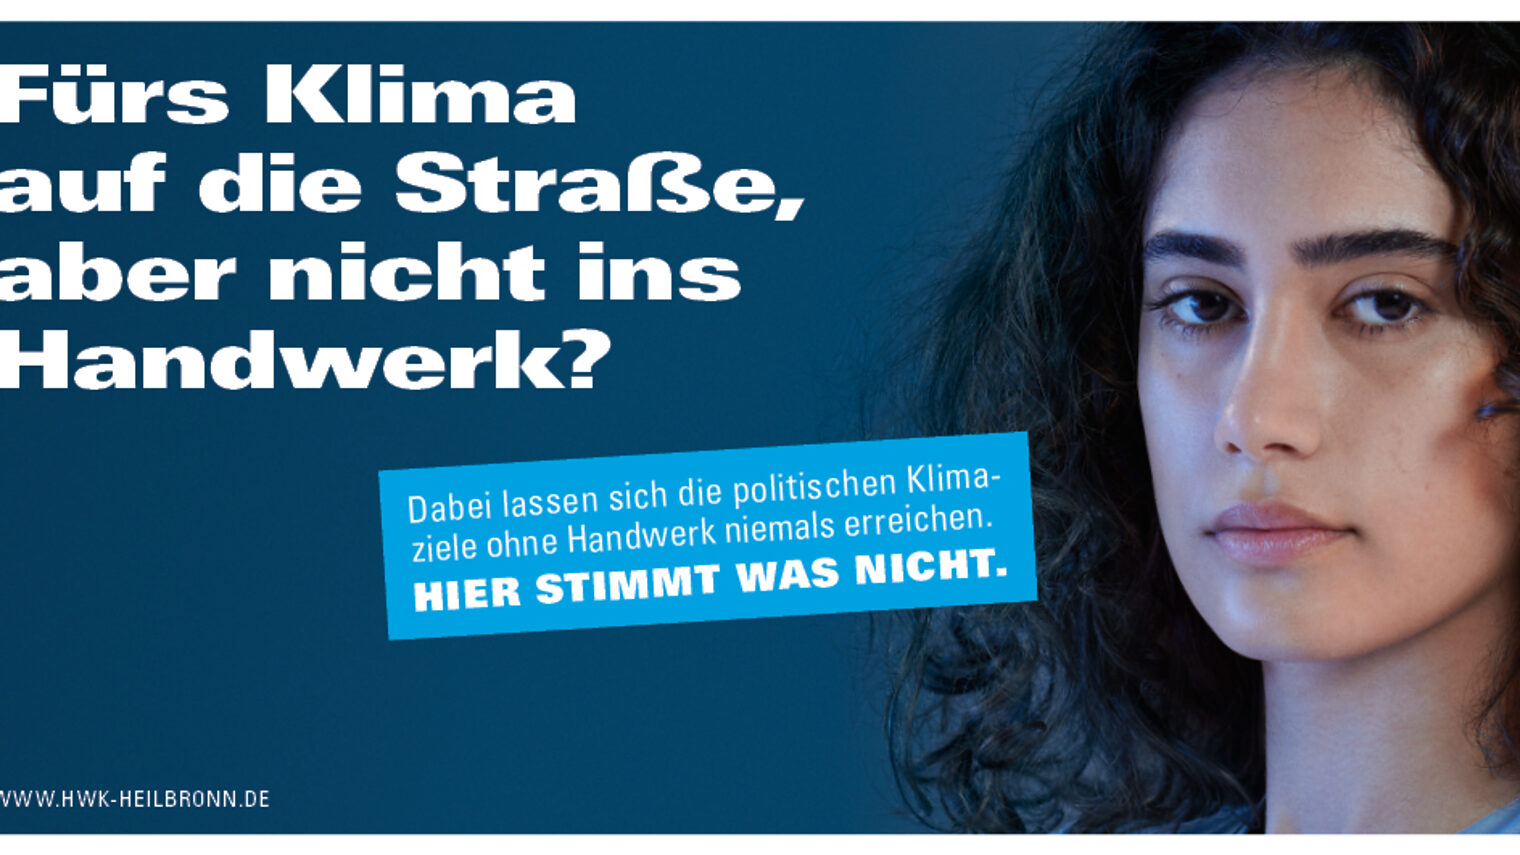 Werbeplakat zeigt junge Frau mit ernstem Blick, daneben Text: Fürs Klima auf die Straße, aber nicht ins Handwerk?